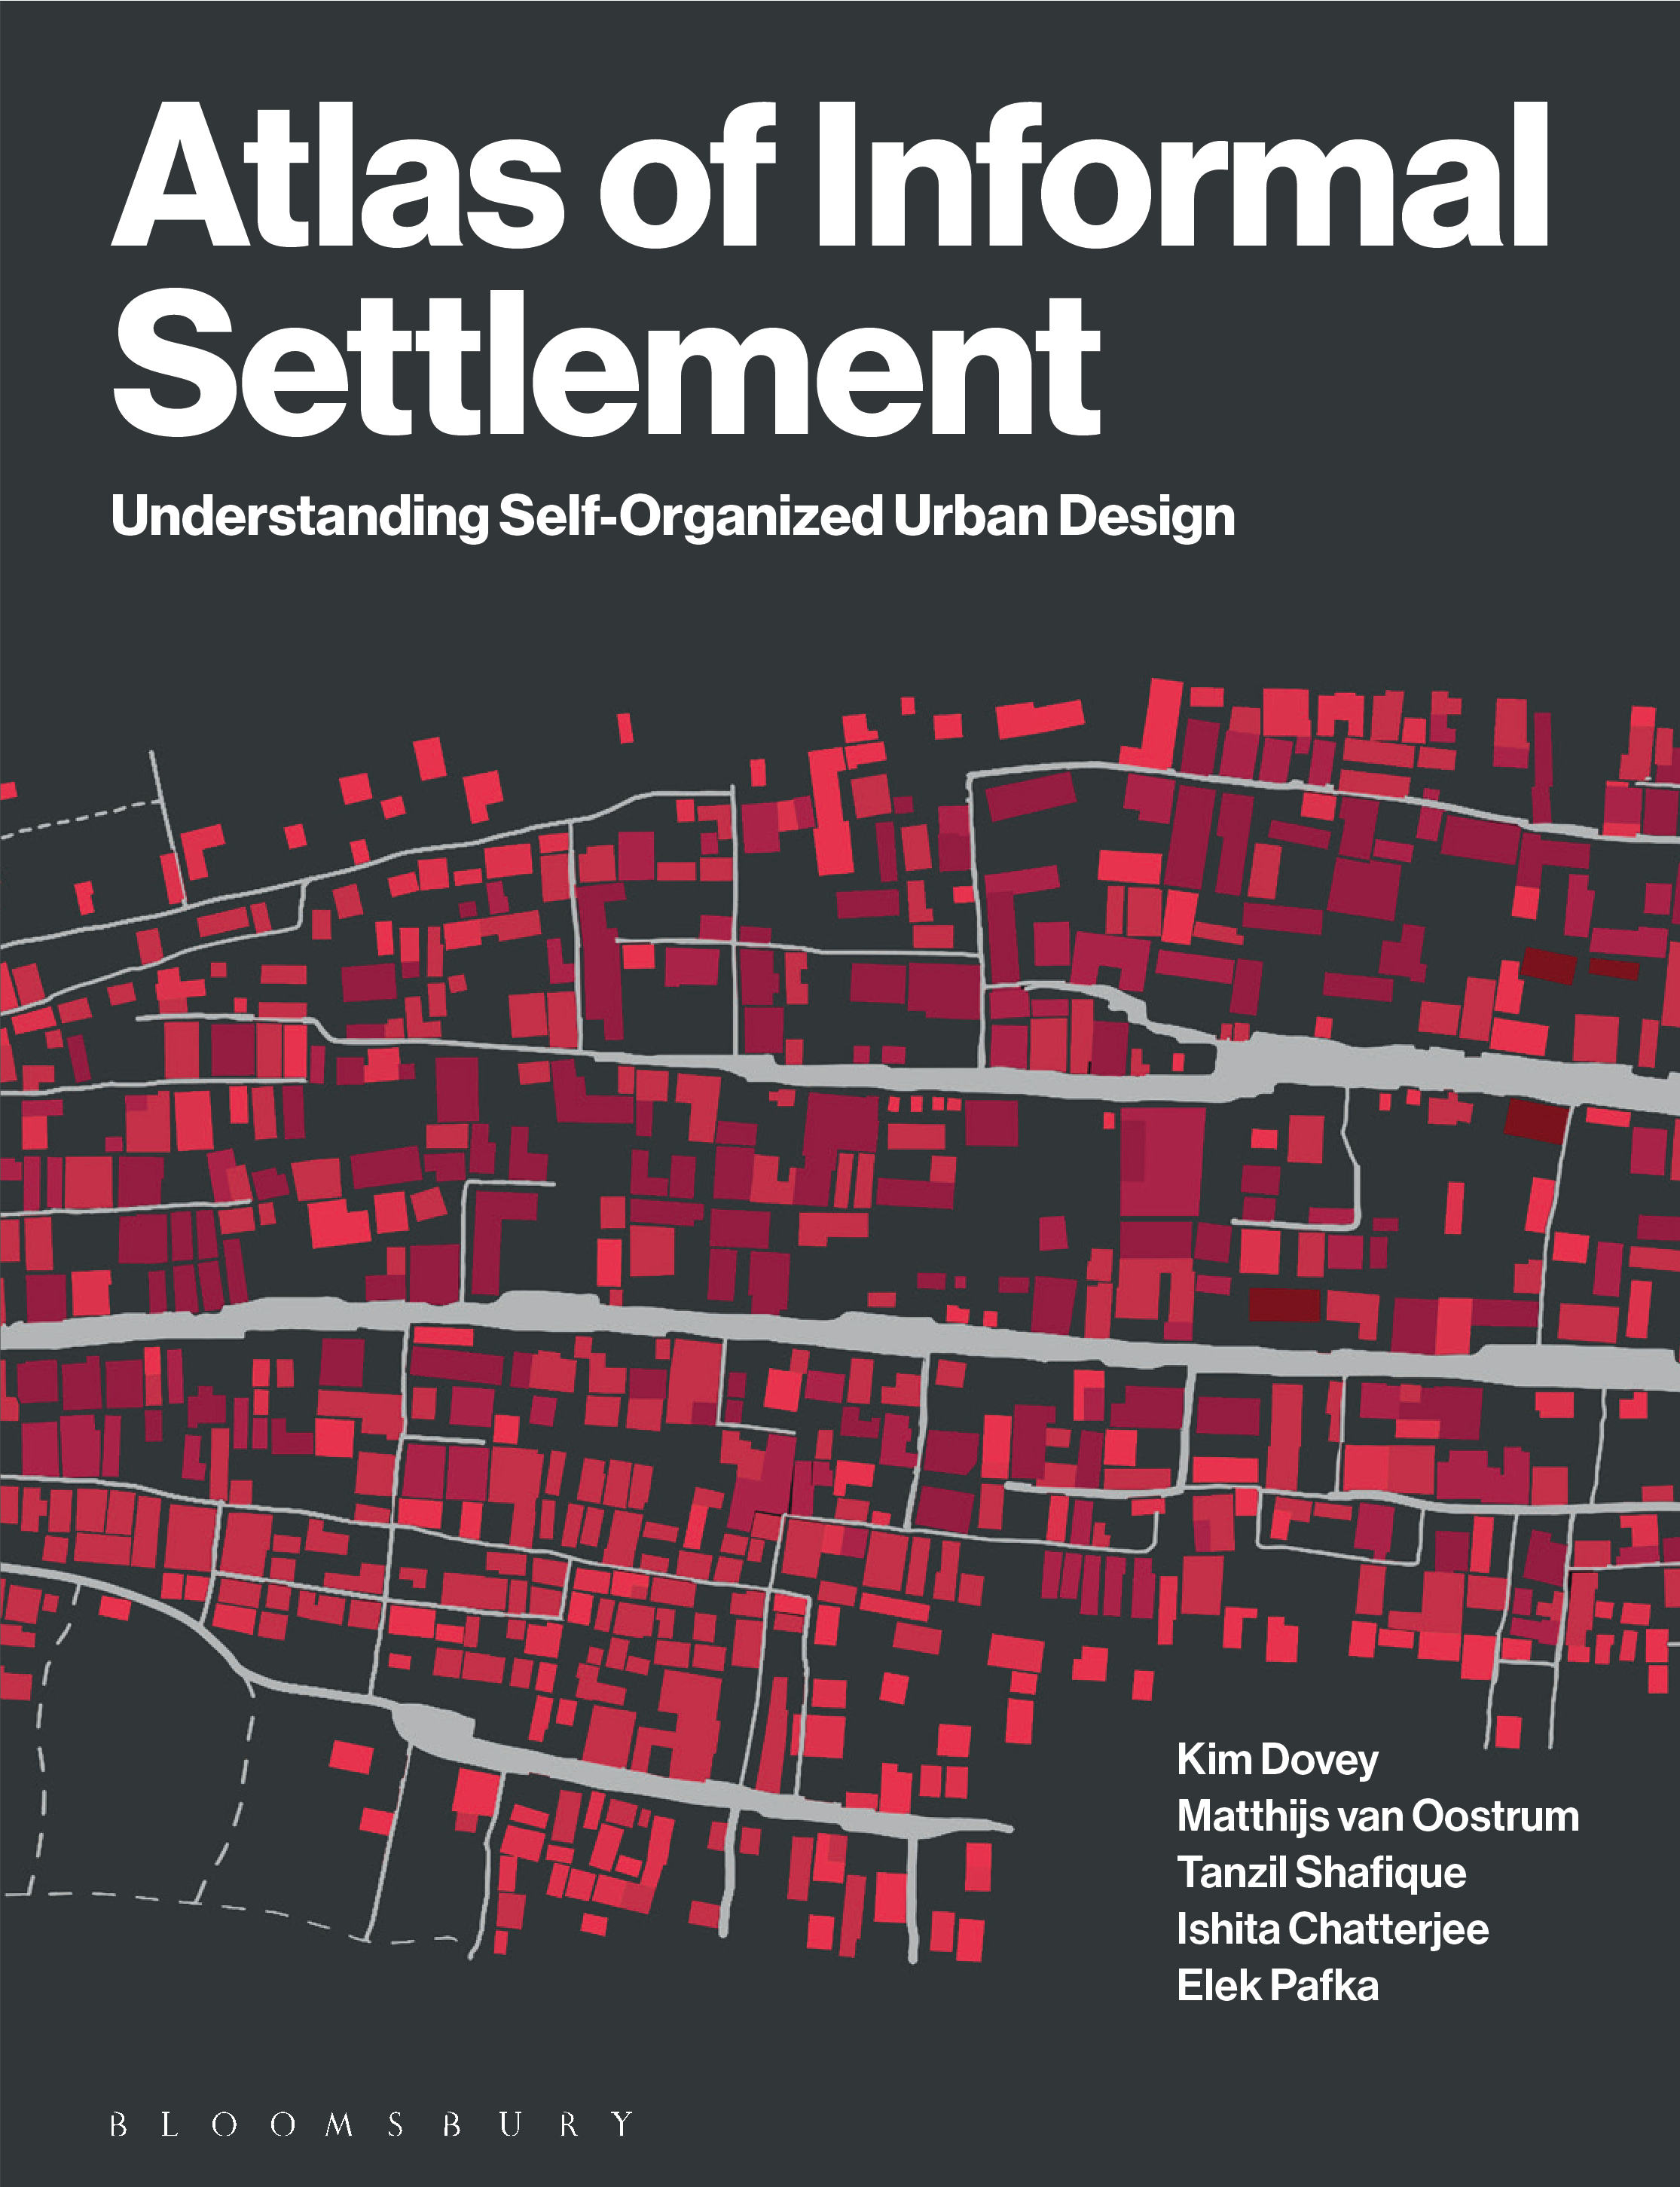 Altas of Informal Settlement Book Cover